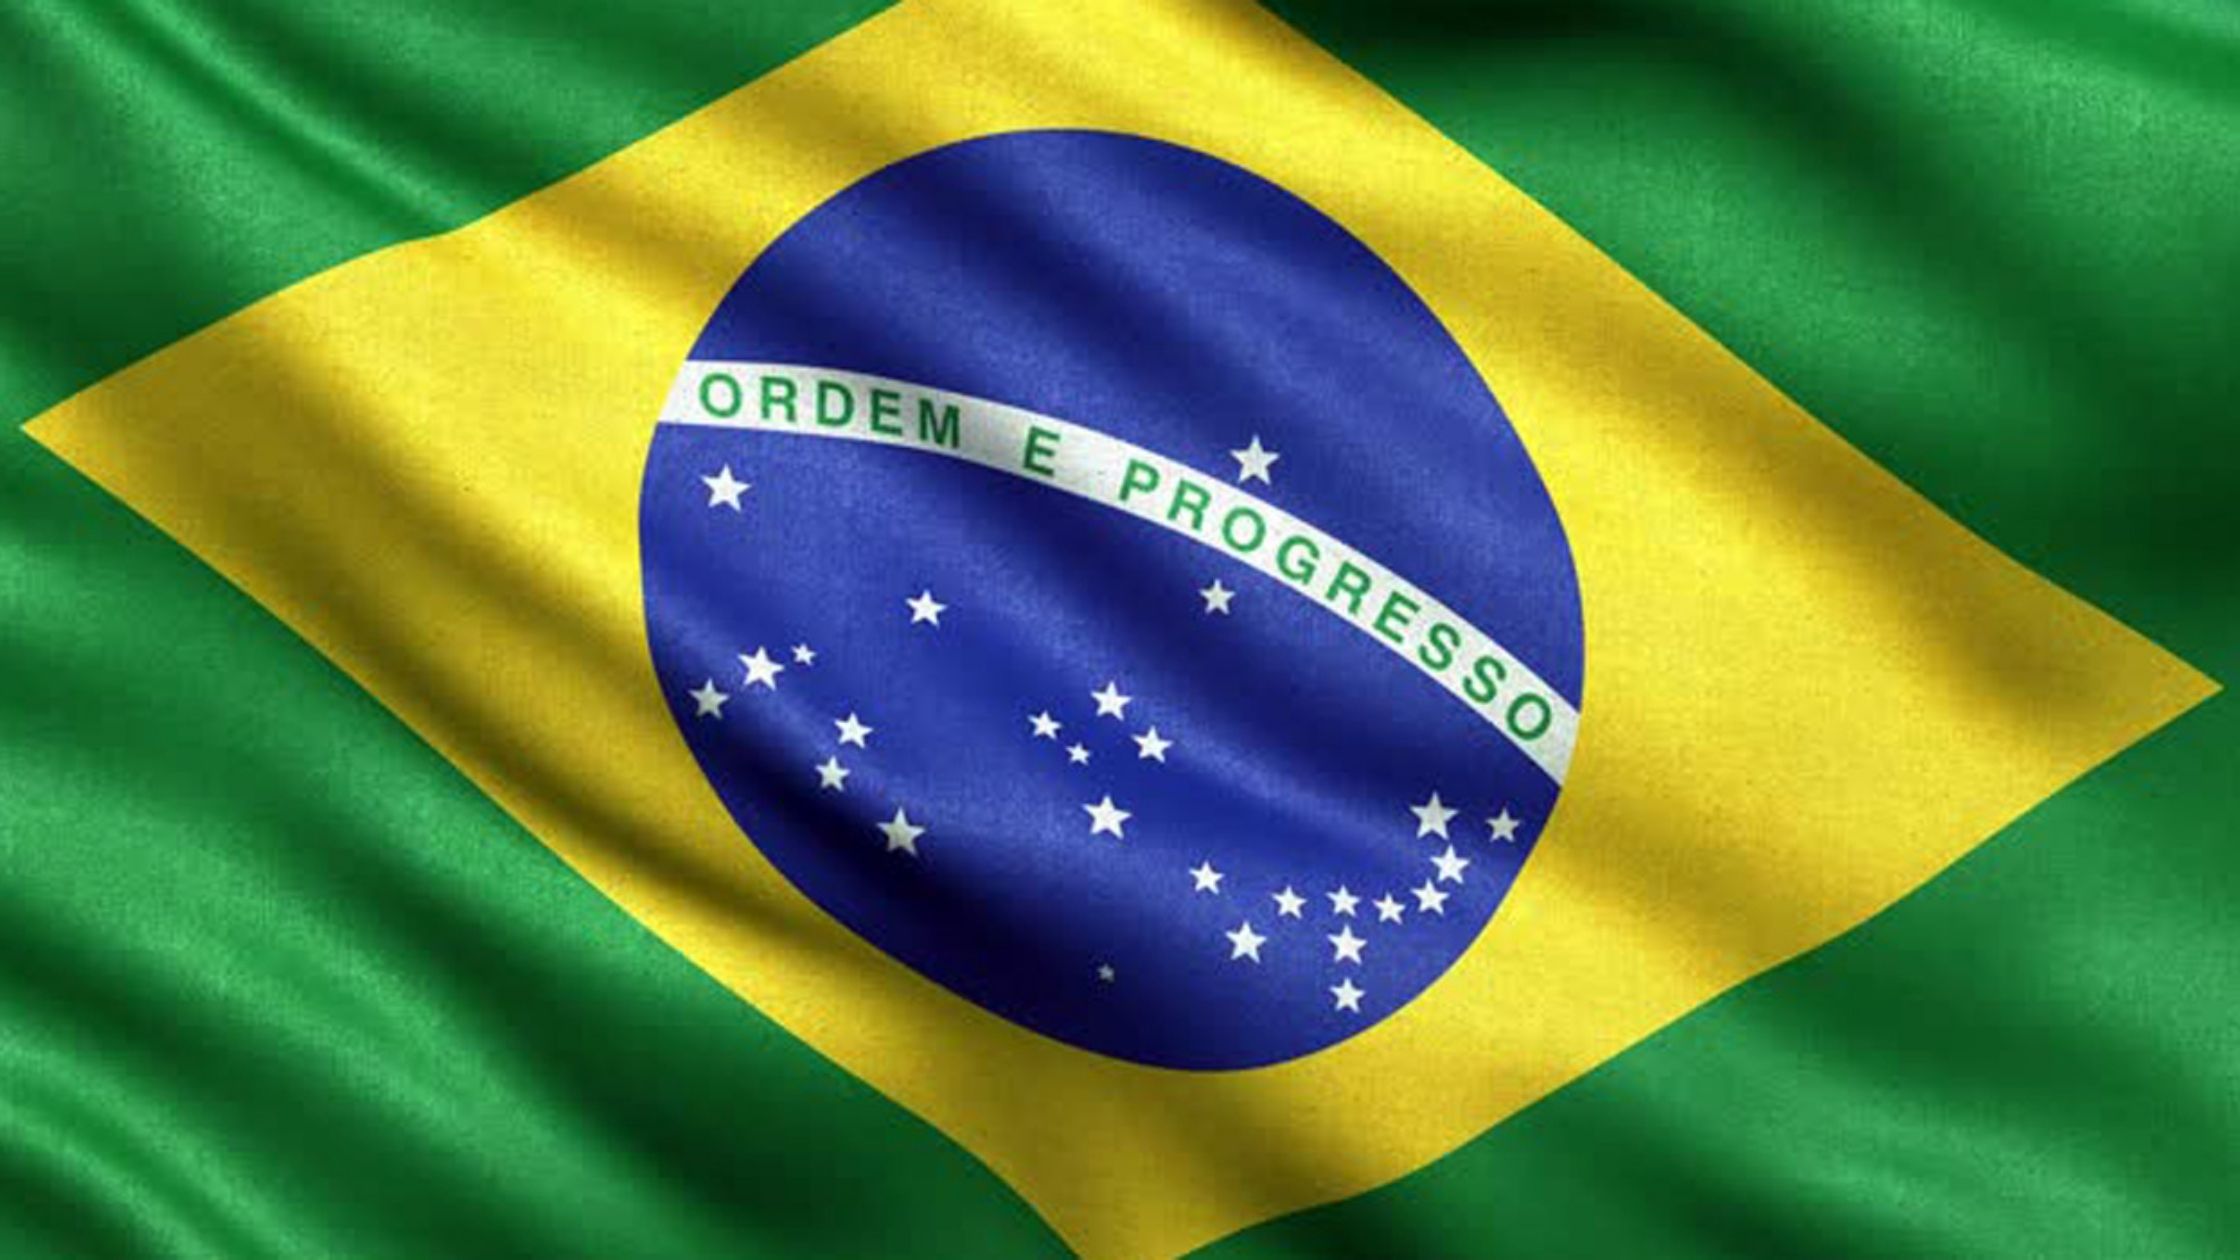 VISIONARI: l'impegno dell'associazione per il Brasile